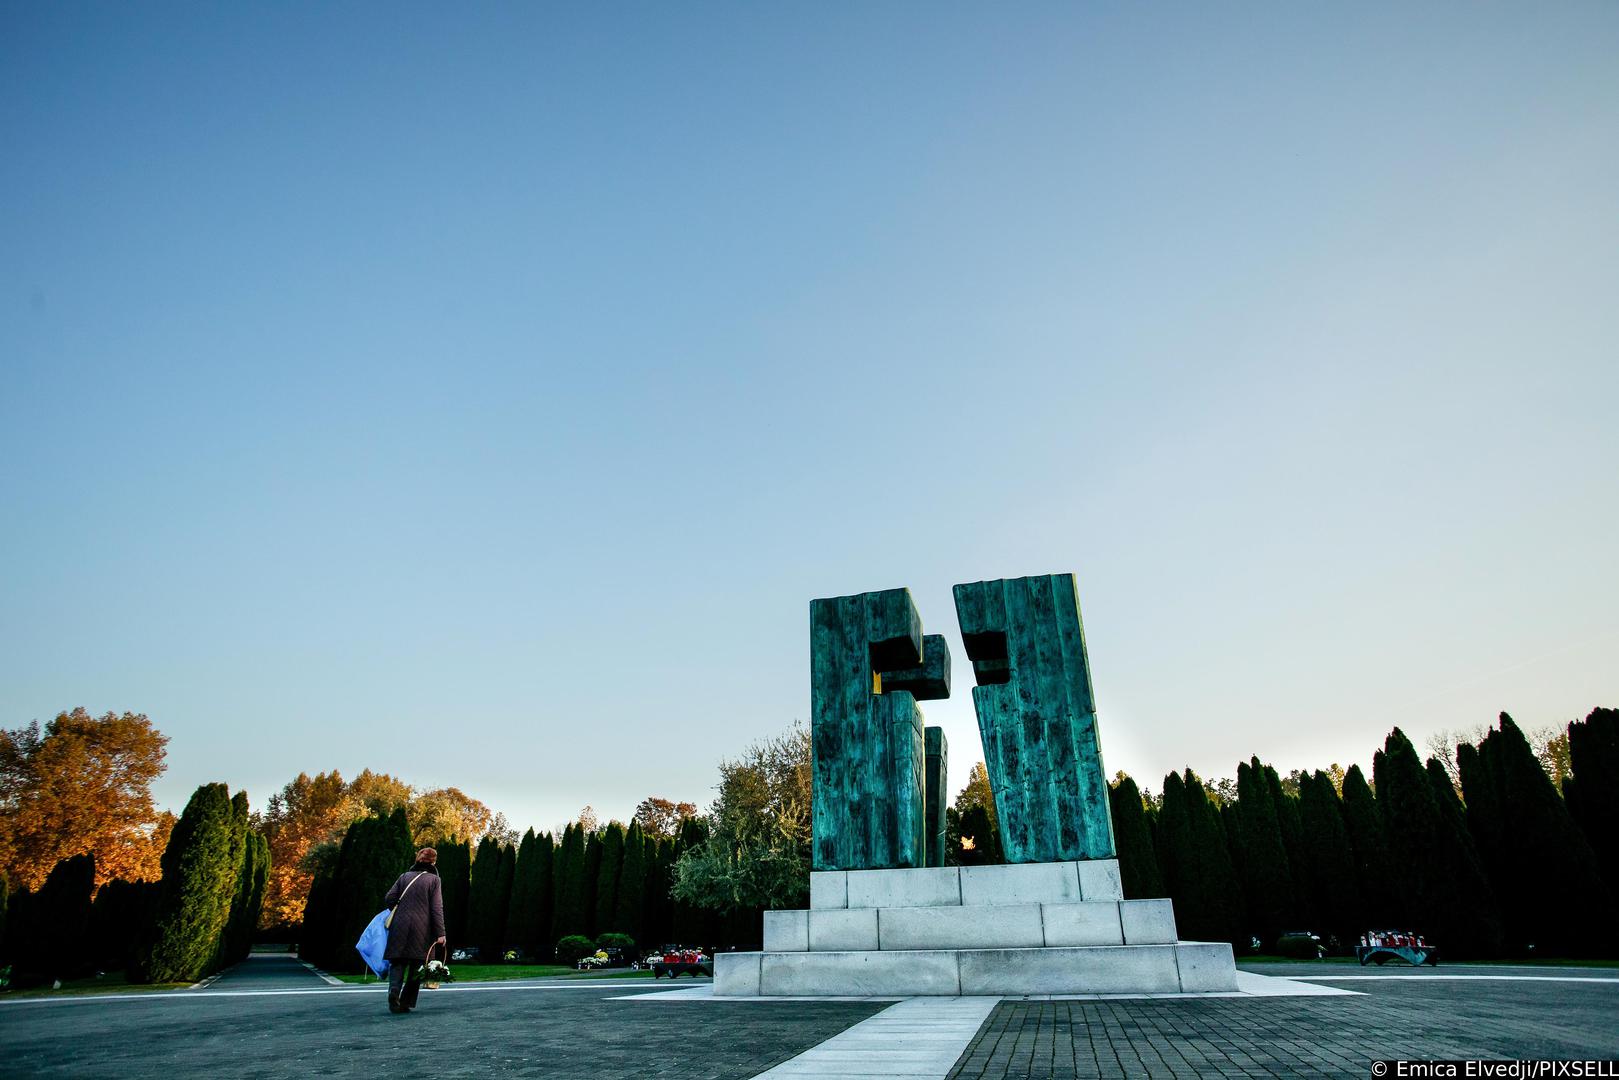 28.10.2021., Vukovar -  Memorijalno groblje zrtava iz Domovinskog rata u Vukovaru.
Na mjestu masovne grobnice na groblju je ekshumirano 938 tijela i na tomu je mjestu postavljen isti broj bijelih mramornih krizeva koji predstavljaju broj zrtava. U sredisnjem dijelu groblja 5. kolovoza 2000. godine postavljen je spomenik ciji je autor Djurdja Ostoja. Spomenik je izradjen od patinirane bronce, visok je cetiri metra, a u sredini je zracni kriz i vjecni plamen. Najmladja zrtva Domovinskog rata imala je svega sest mjeseci, a najstarija 104 godine.